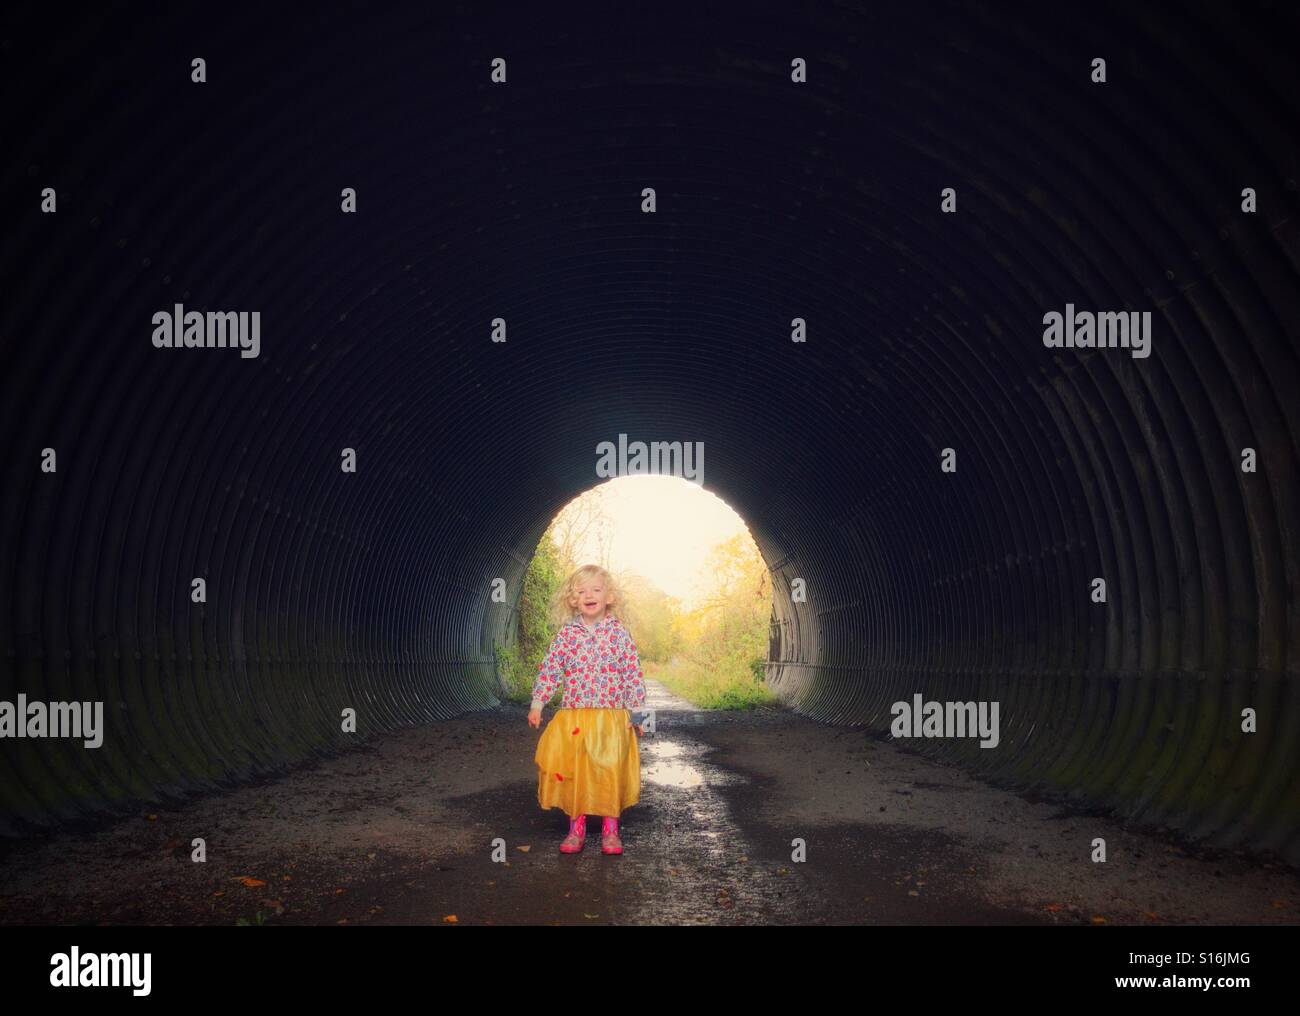 Kleines Kind singt in einem Tunnel genießen die Echos Stockfoto